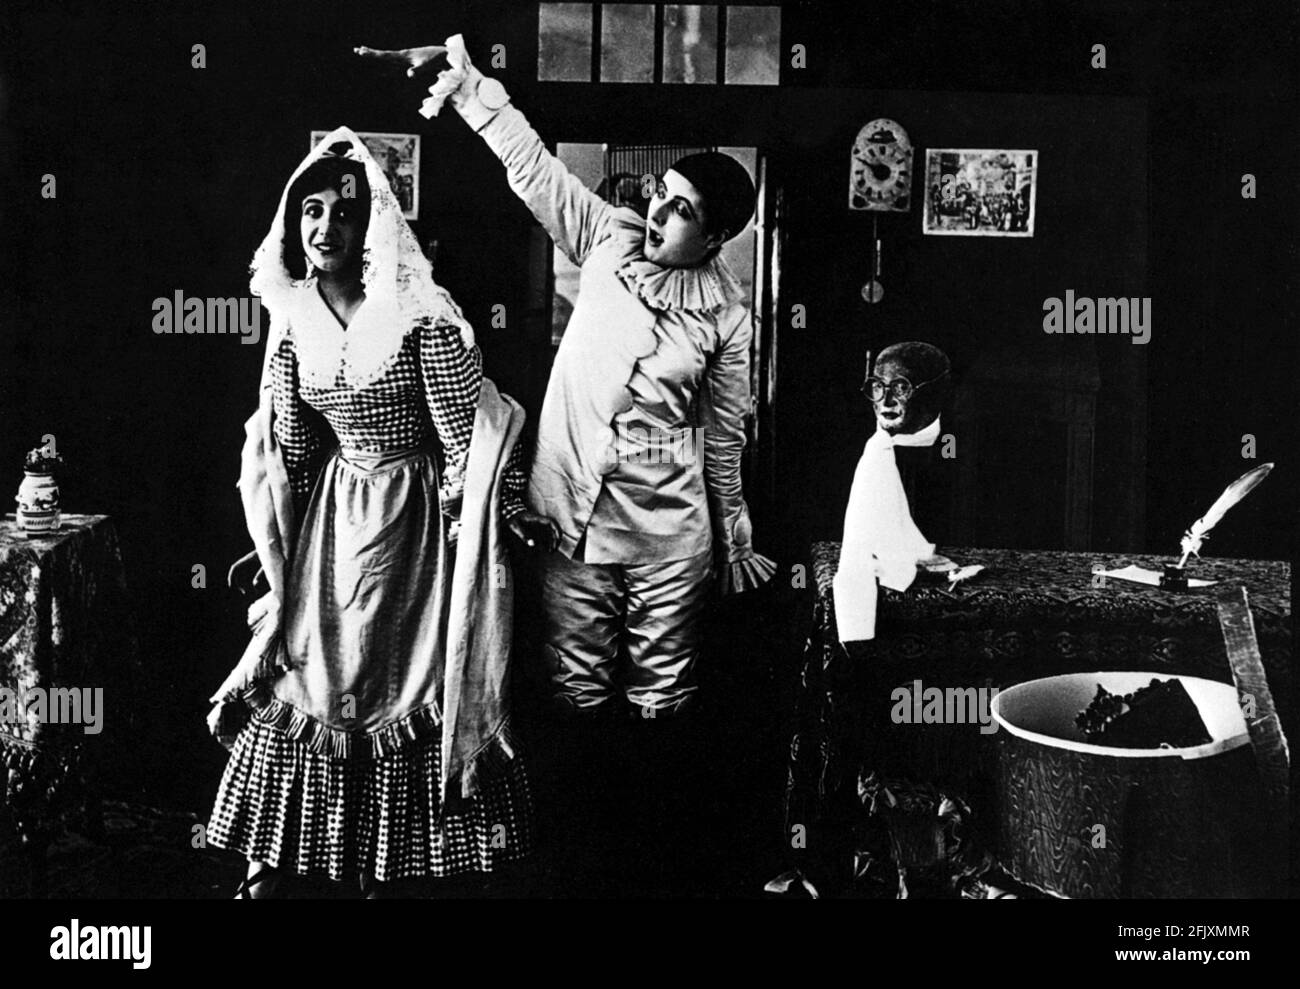 1914, ITALIEN: Der Stummfilm italienische Schauspielerin, DIE COMTESSE Elena Seracini Vitiello, 1888 - 1985, mit LEDA GYS (links) in LA STORIA DI UN PIERROT (L' histoire d'un Pierrot) Di Baldassarre Negroni - FILM - KINO MUTO - Attrice - DIVA - DIVINA - DIVINA - DIVINE - Fancy dress ---- Archivio GBB Stockfoto